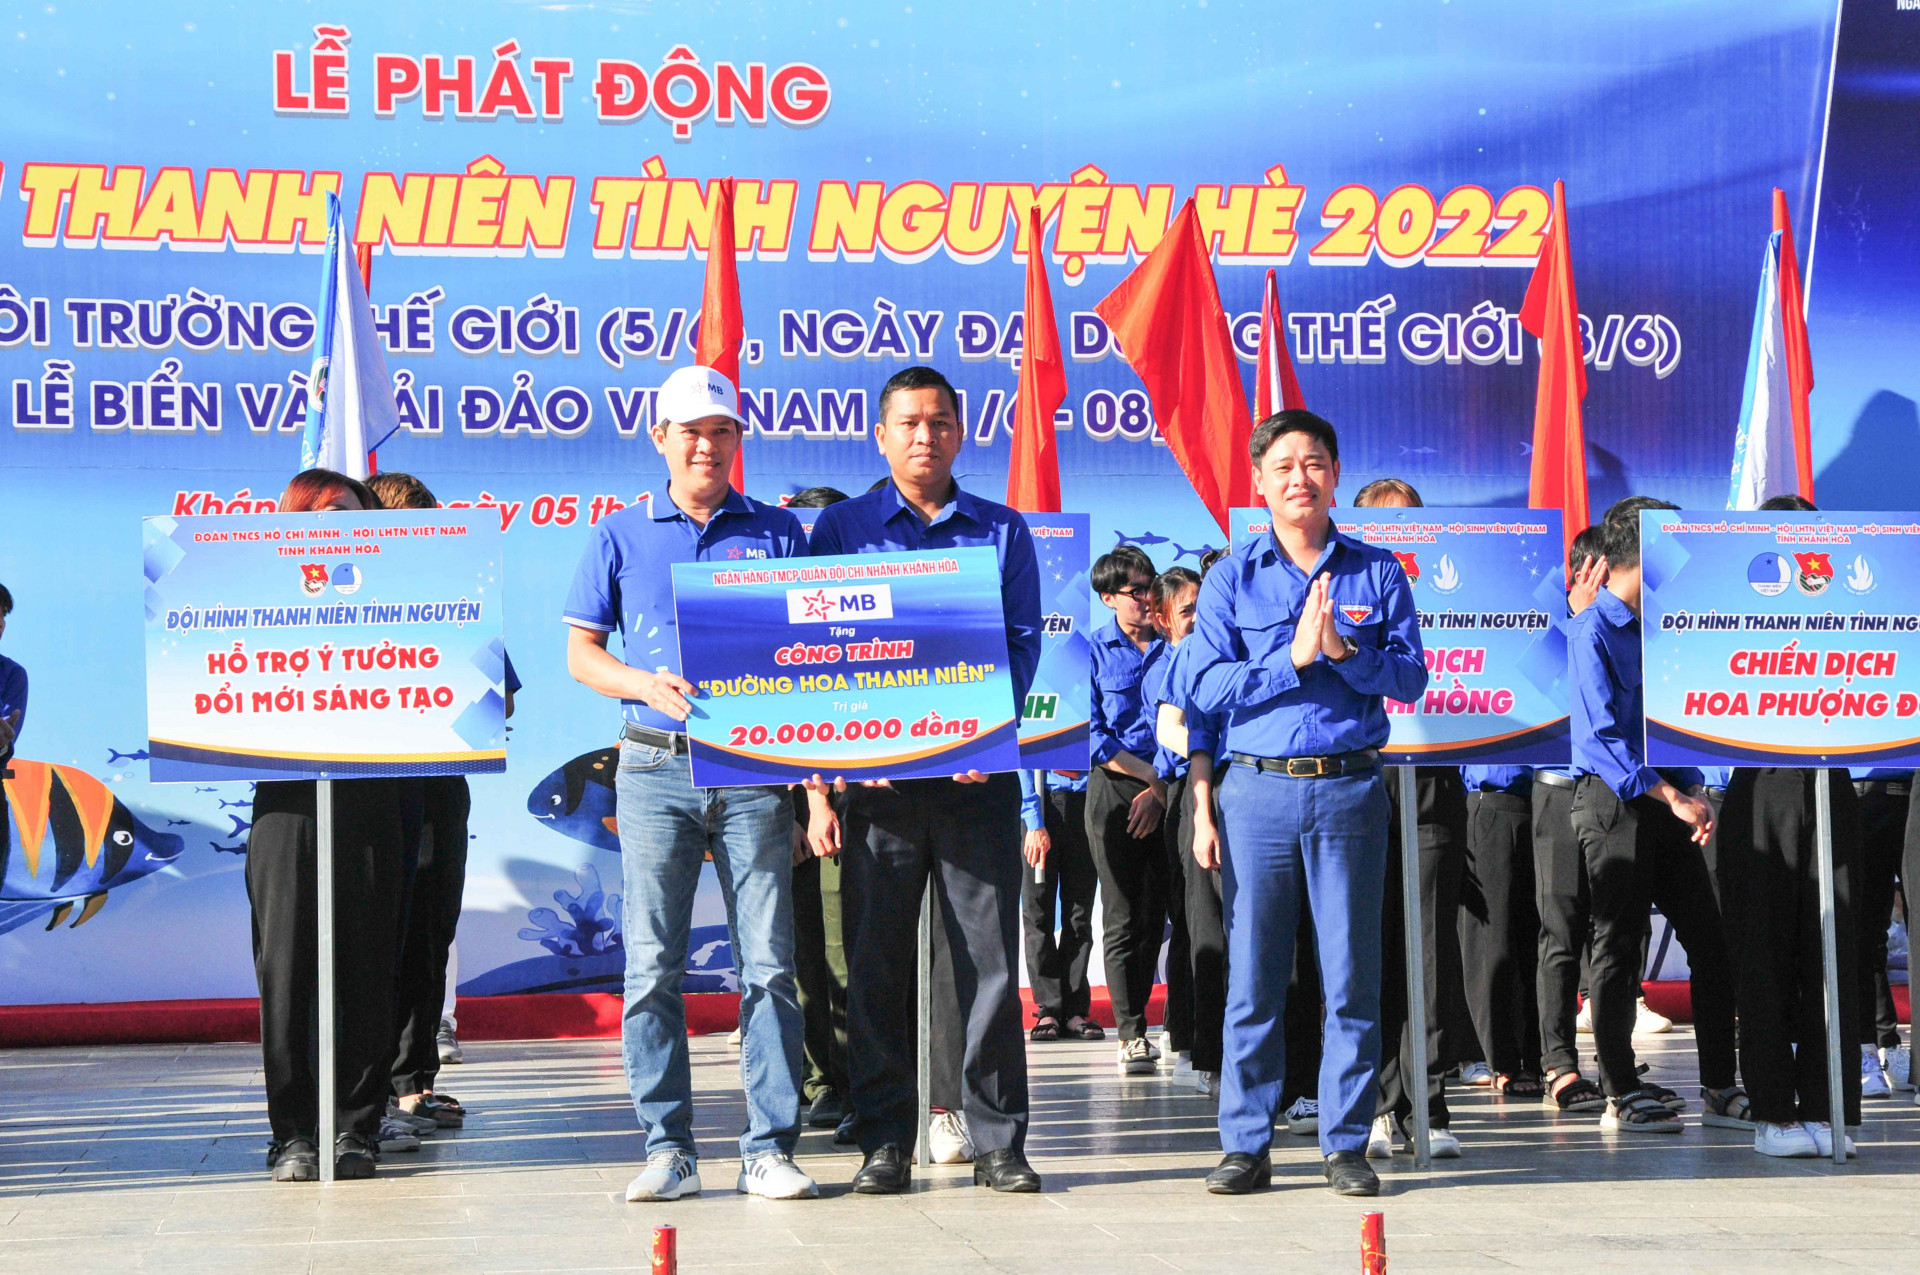 Lãnh đạo Tỉnh đoàn cùng MB Bank trao hỗ trợ công trình Đường hoa thanh niên trị giá 20 triệu đồng cho Huyện đoàn Khánh Vĩnh